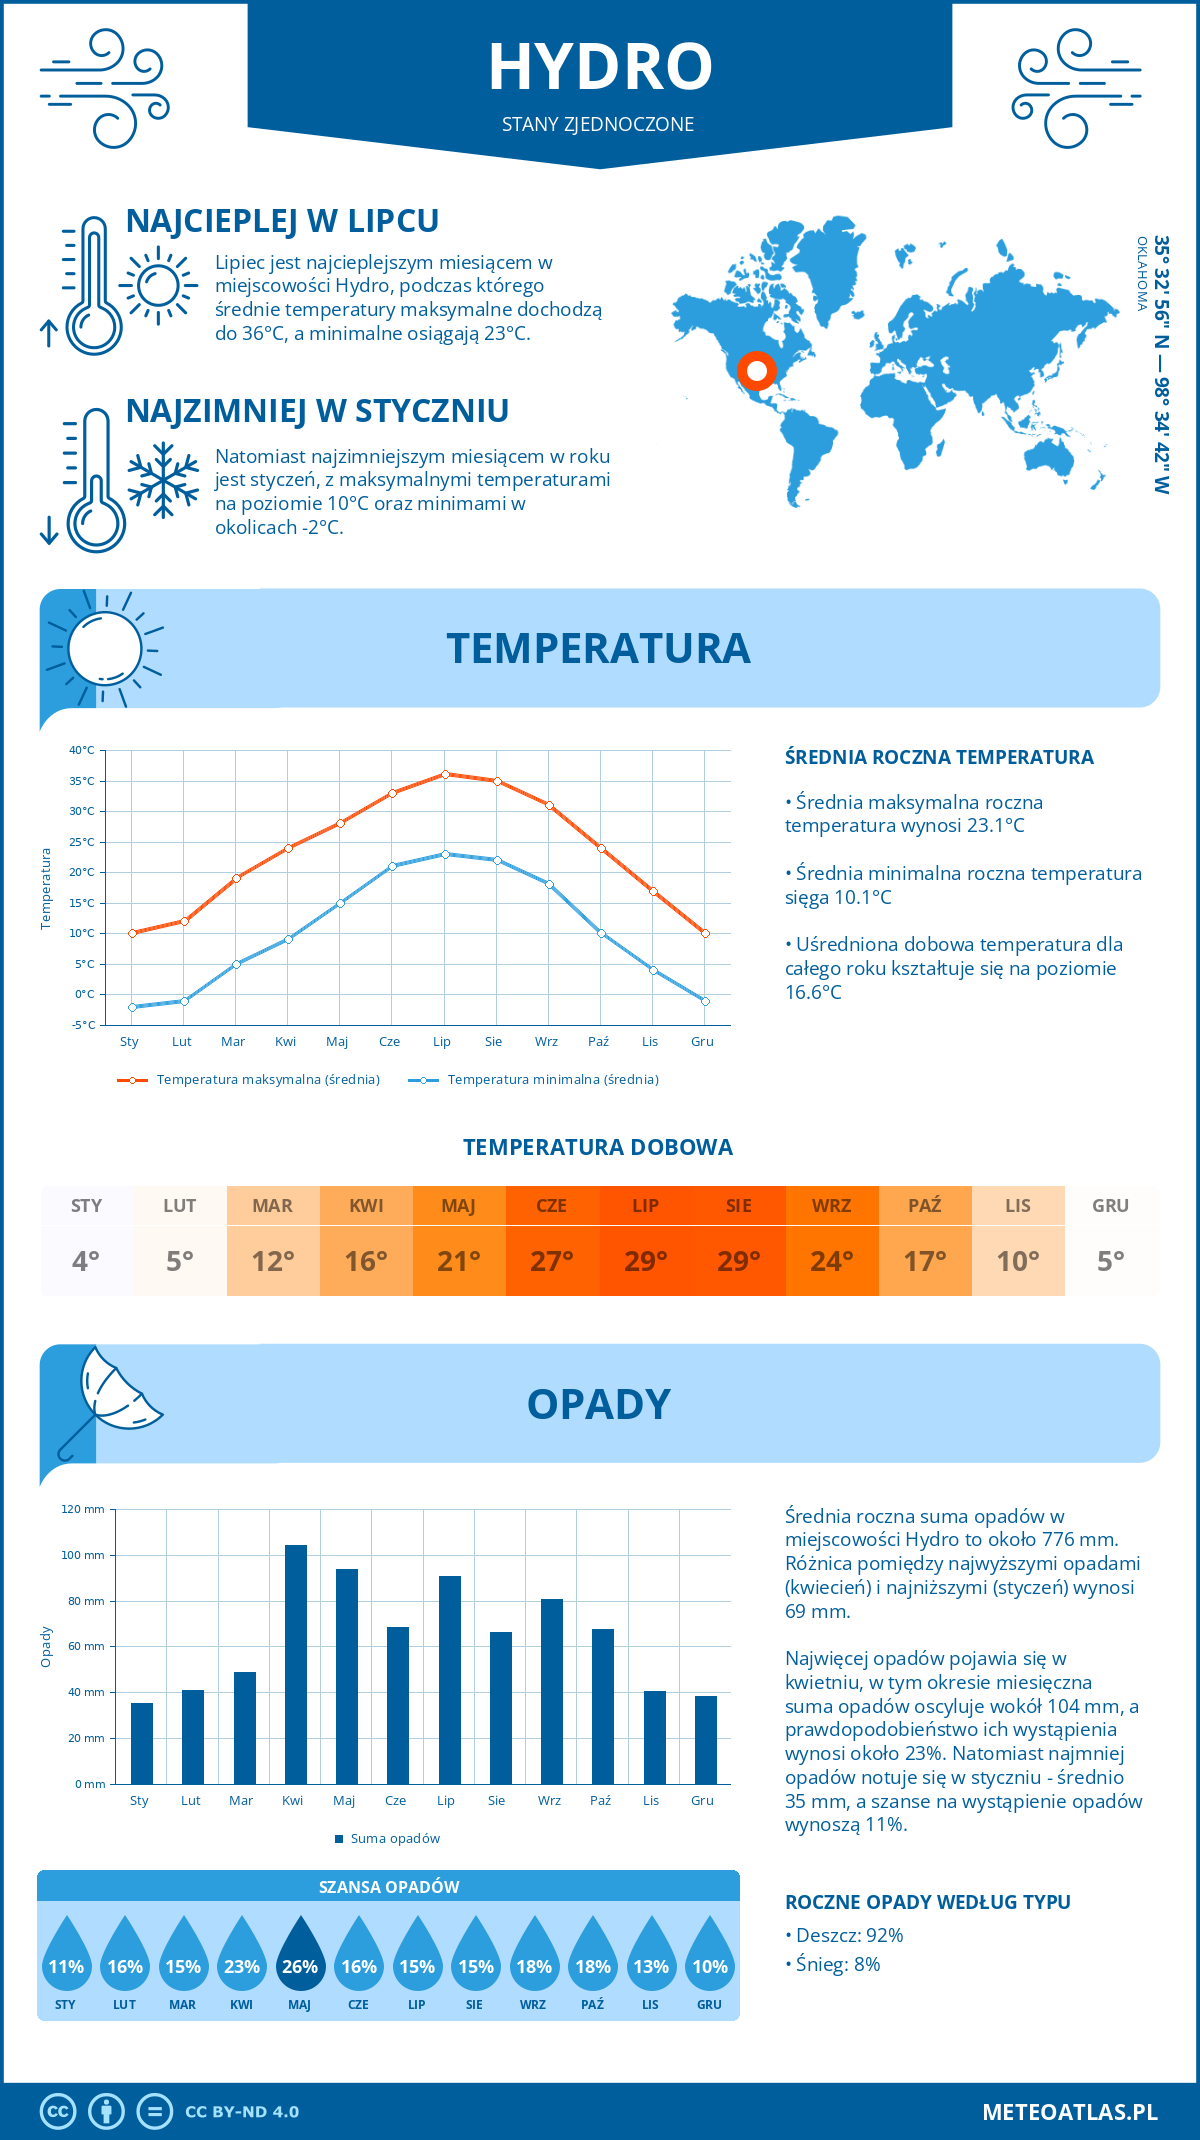 Pogoda Hydro (Stany Zjednoczone). Temperatura oraz opady.